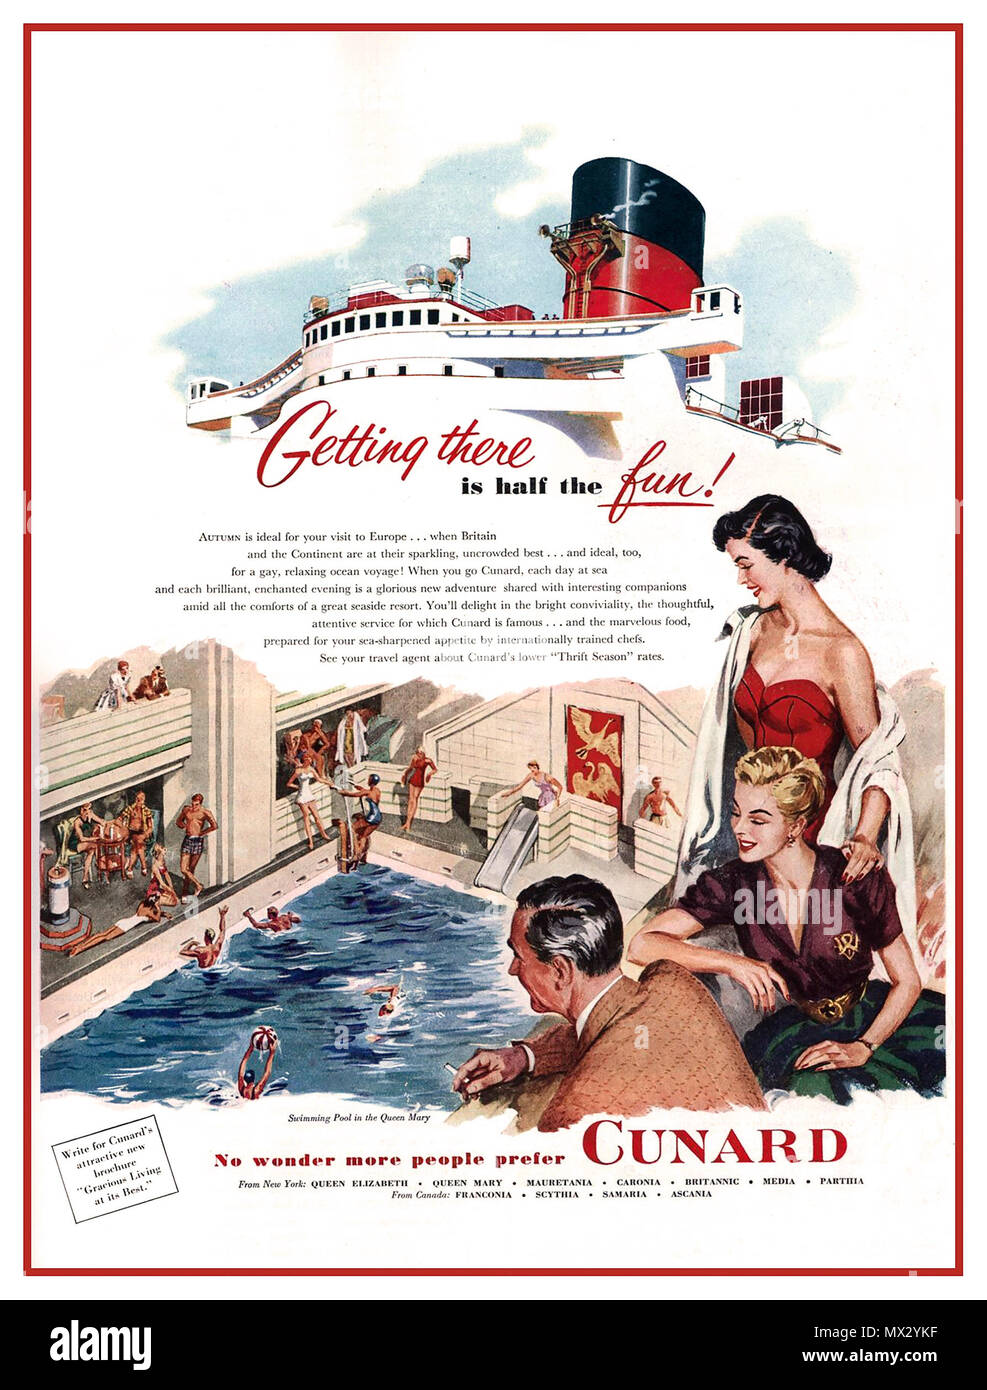 Années 1950 vintage bateau de croisière Cunard Poster ' pour vous y rendre est la moitié du plaisir" "Ce n'est pas étonnant que plus de gens préfèrent le Cunard' Banque D'Images